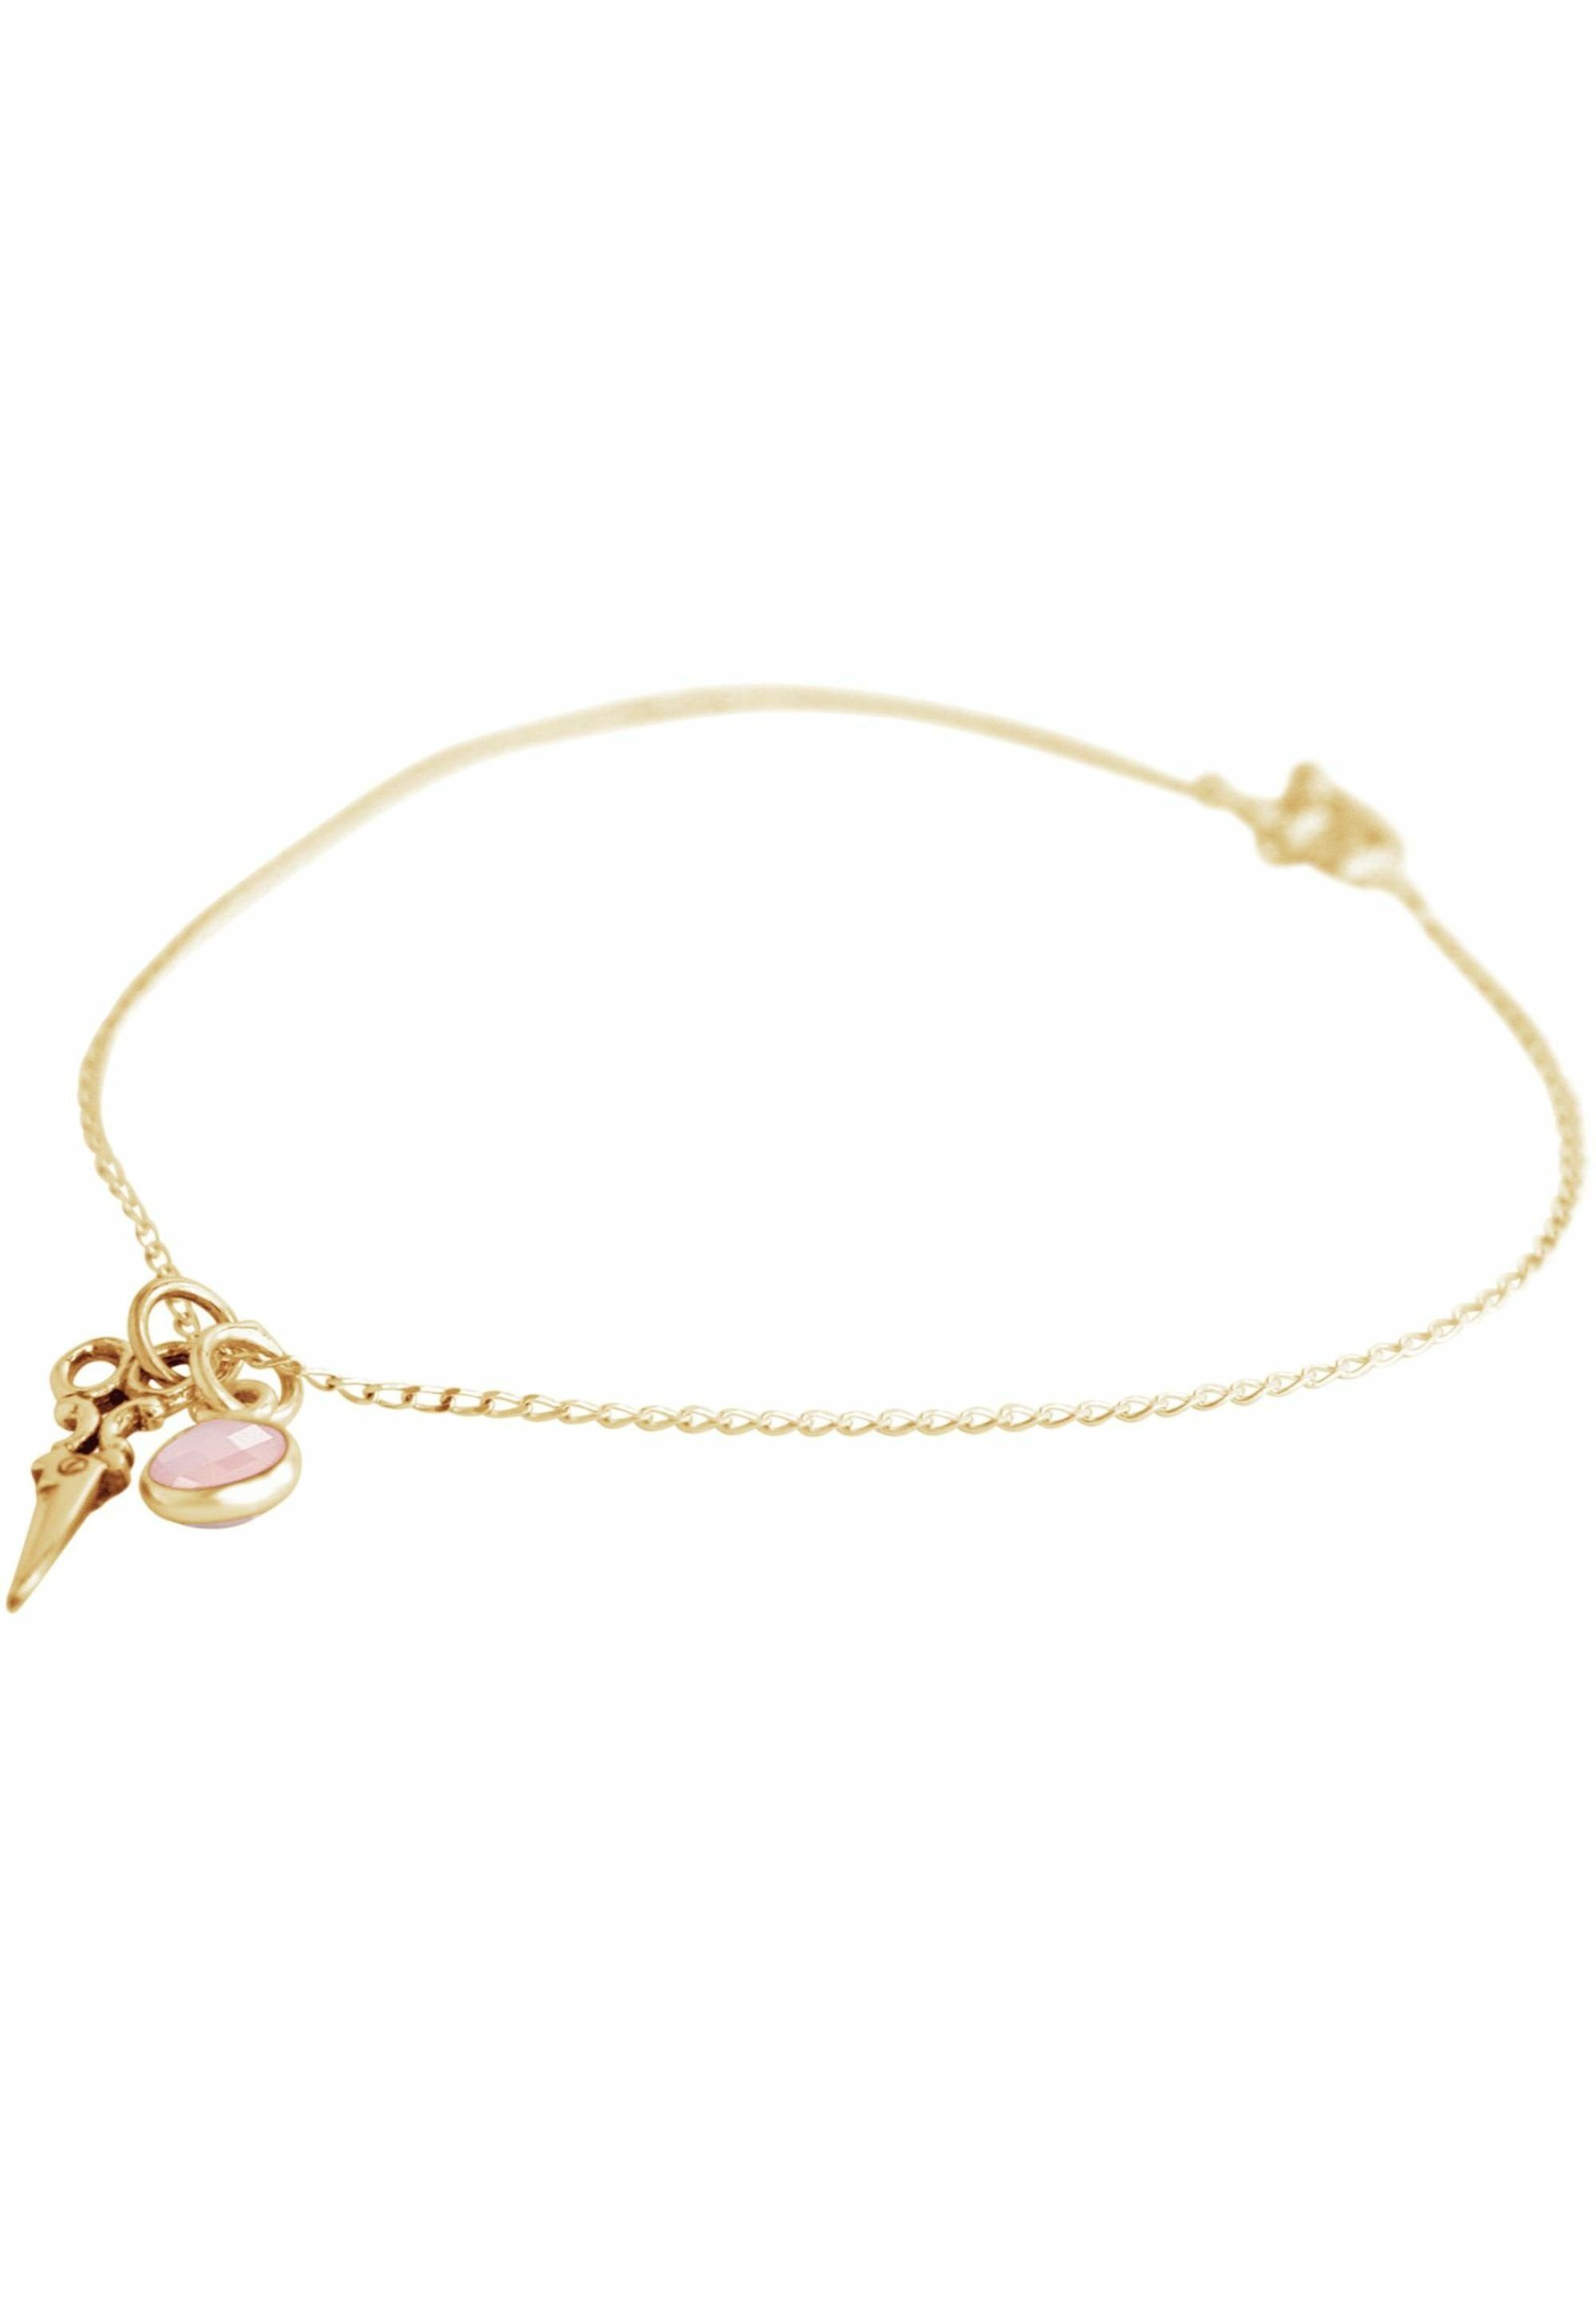 Gemshine Armband Schere gold coloured und Rosenquarz